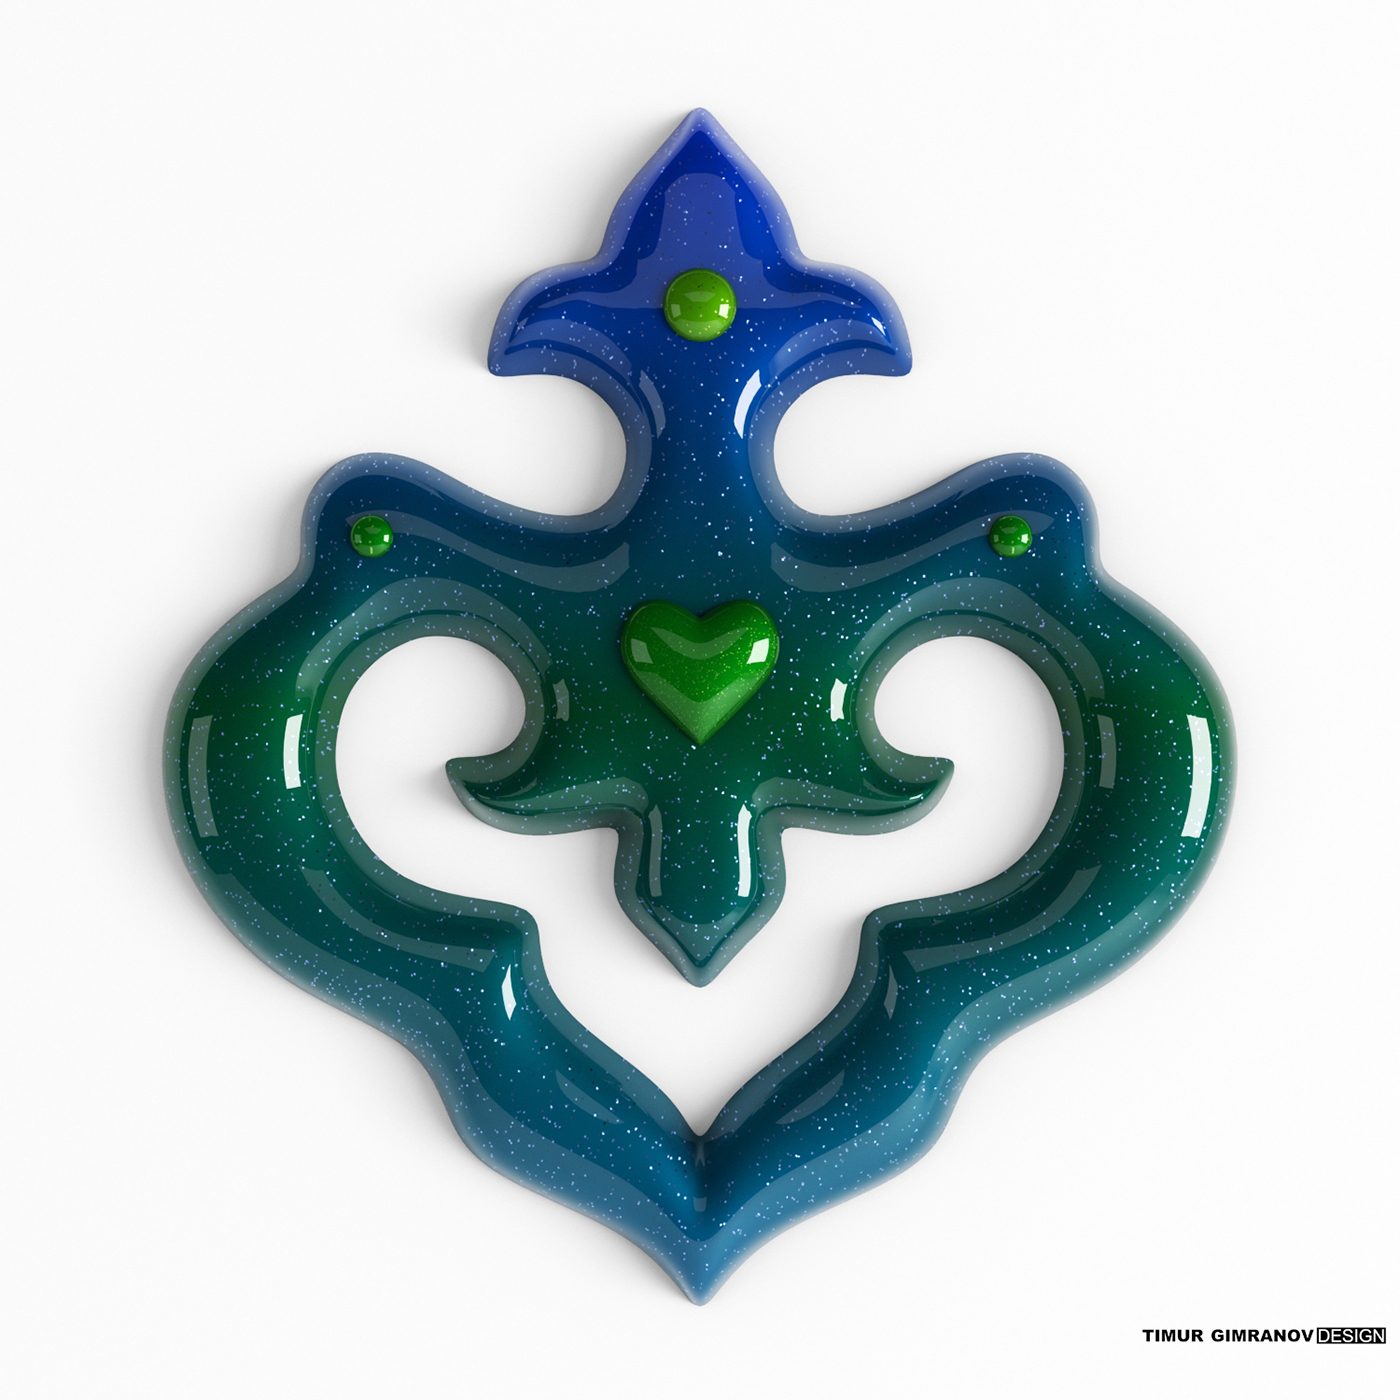 tatar Kazan Tatarstan ornament pattern 3D 3Dtypo